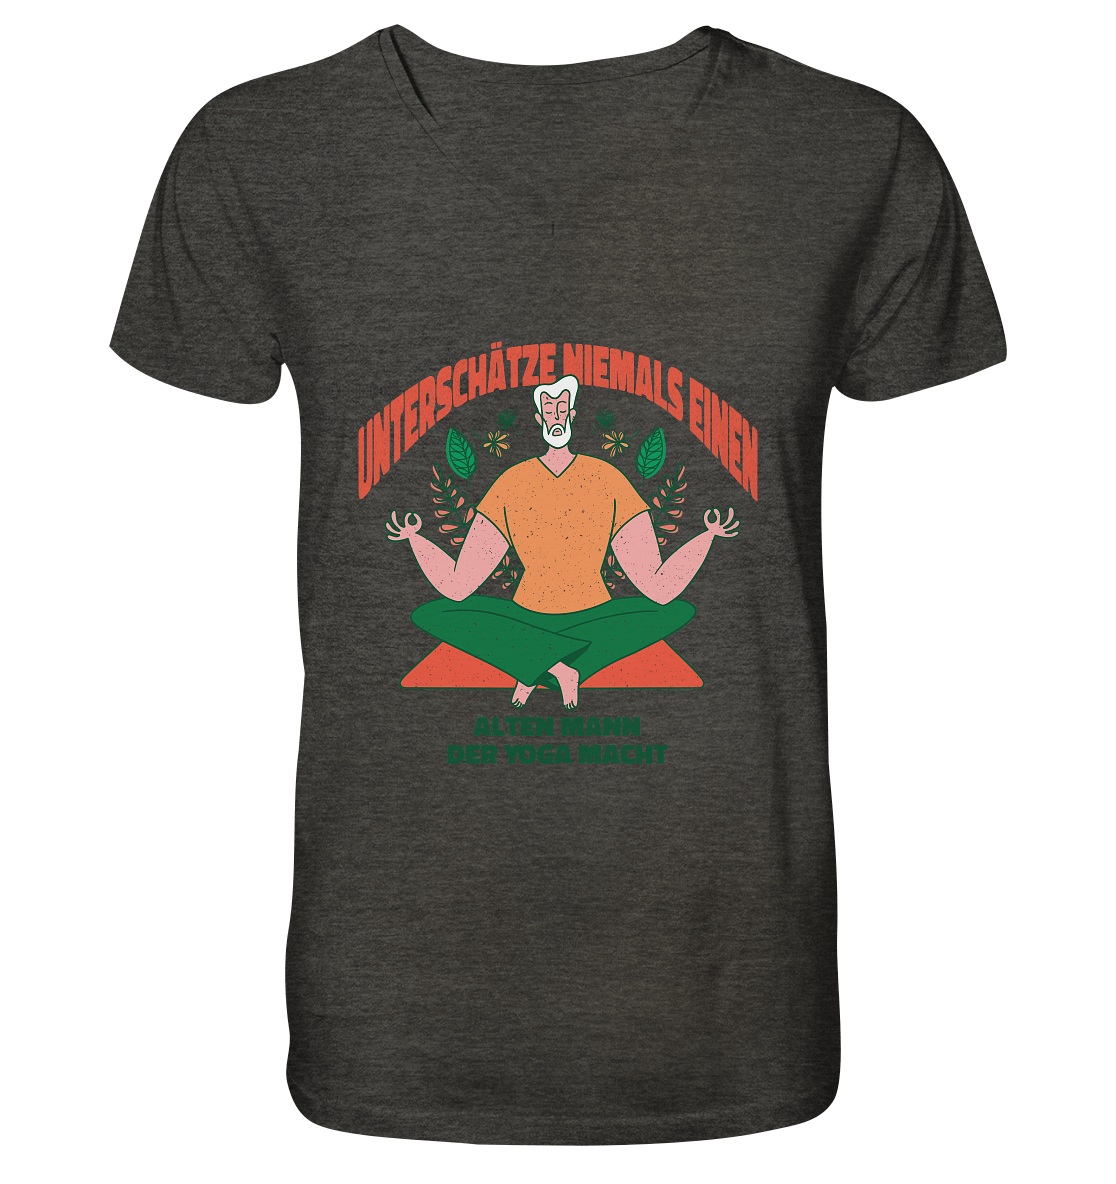 Unterschätze niemals einen alten Mann Yoga - Mens Organic V-Neck Shirt - Online Kaufhaus München